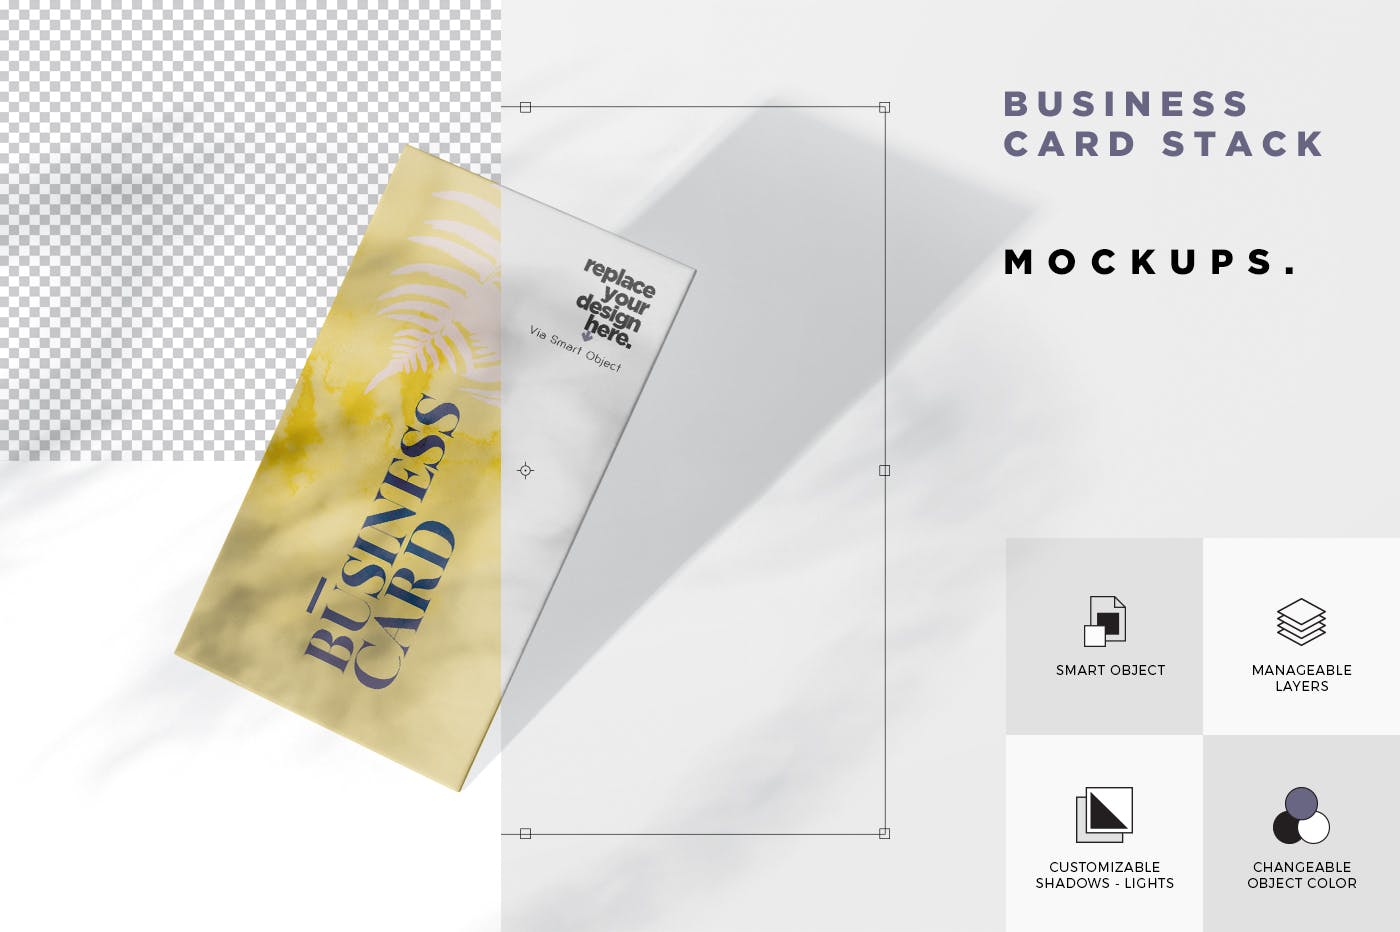 企业名片侧立面效果图样机模板 Business Card Stack Mockup in 90×50 Format插图5